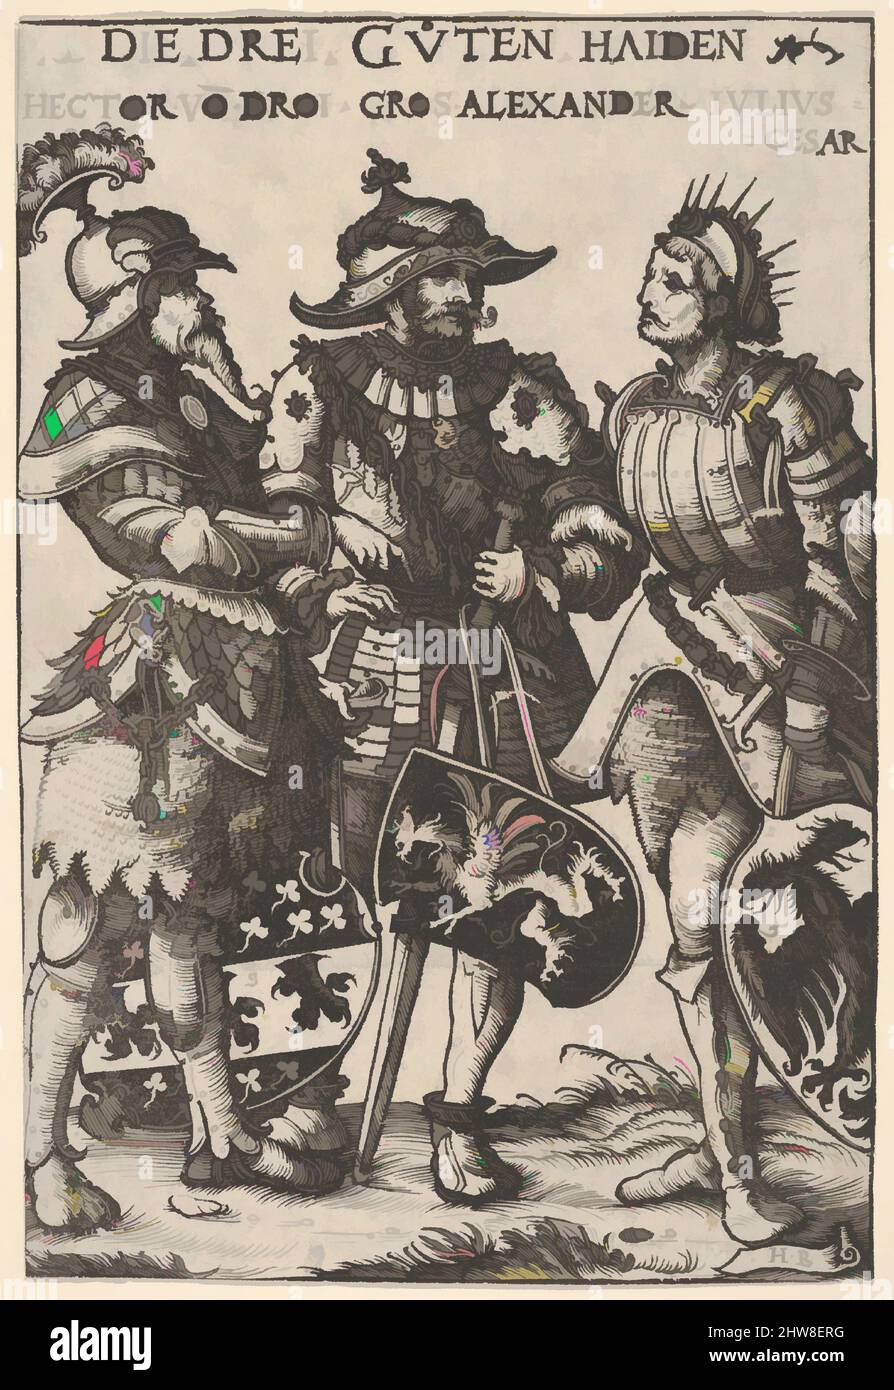 Arte ispirata dai tre Eroi pagani (Die Drei Guten Haiden), da Eroi ed Eroi, 1516, Woodcut; primo stato di tre (Hollstein), foglio: 7 5/8 x 5 3/16 in. (19,4 x 13,1 cm), stampe, Hans Burgkmair (tedesco, Augusta 1473–1531 Augsburg), blocco tagliato da Jost de Negker (1480–1546, opere classiche modernizzate da Artotop con un tuffo di modernità. Forme, colore e valore, impatto visivo accattivante sulle emozioni artistiche attraverso la libertà delle opere d'arte in modo contemporaneo. Un messaggio senza tempo che persegue una nuova direzione selvaggiamente creativa. Artisti che si rivolgono al supporto digitale e creano l'NFT Artotop Foto Stock